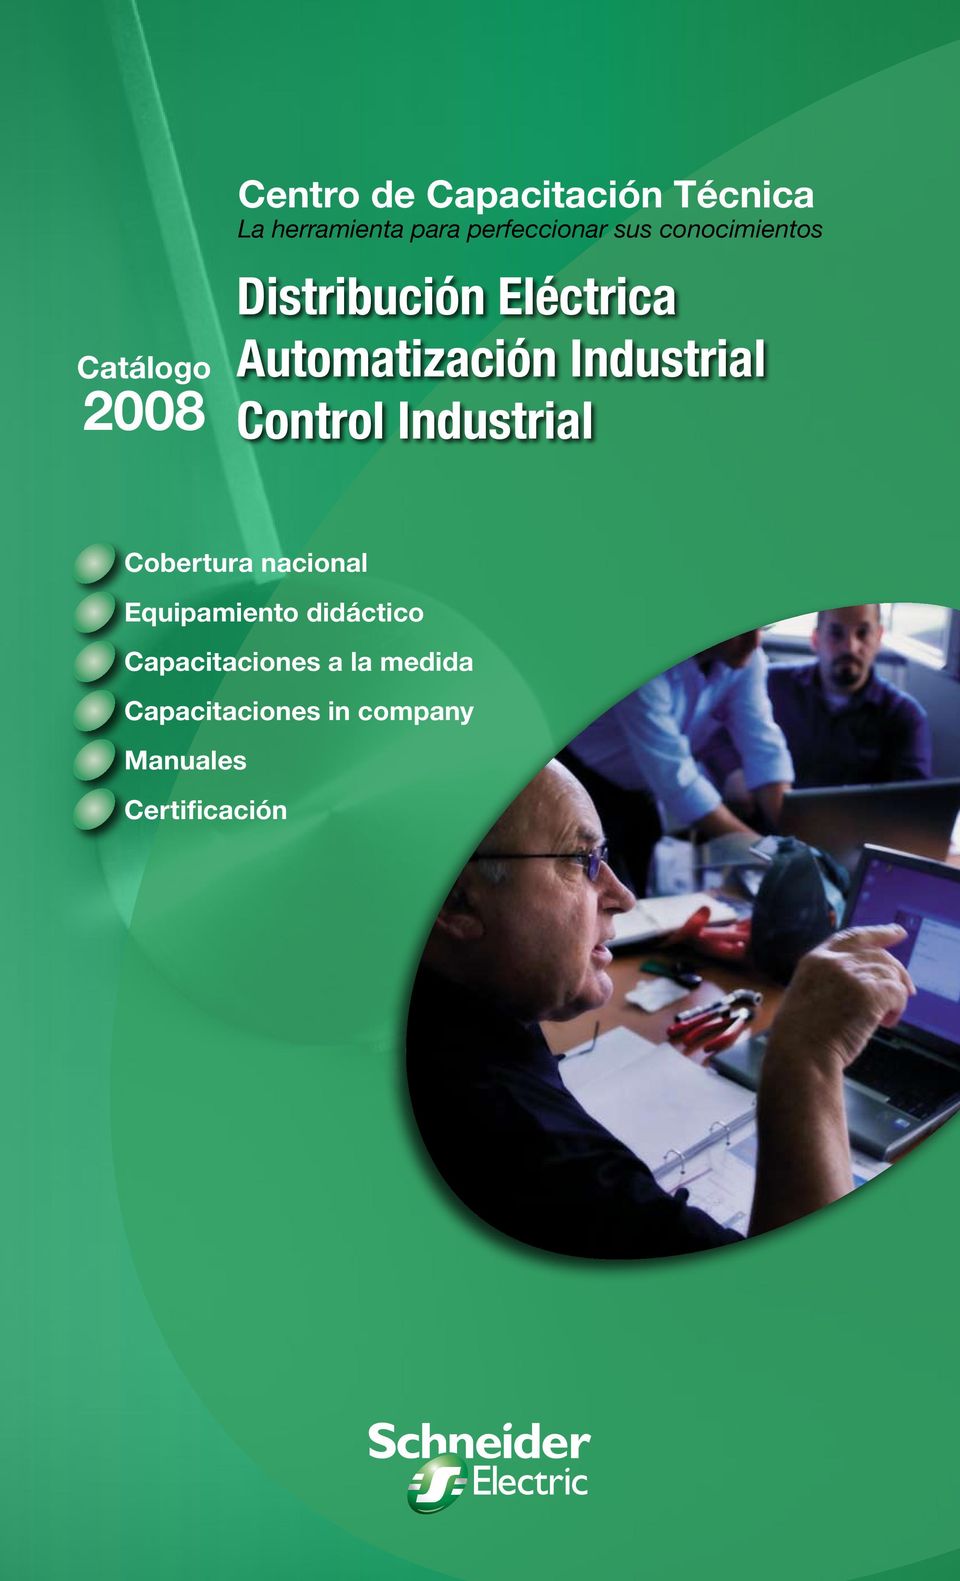 Industrial Control Industrial Cobertura nacional Equipamiento